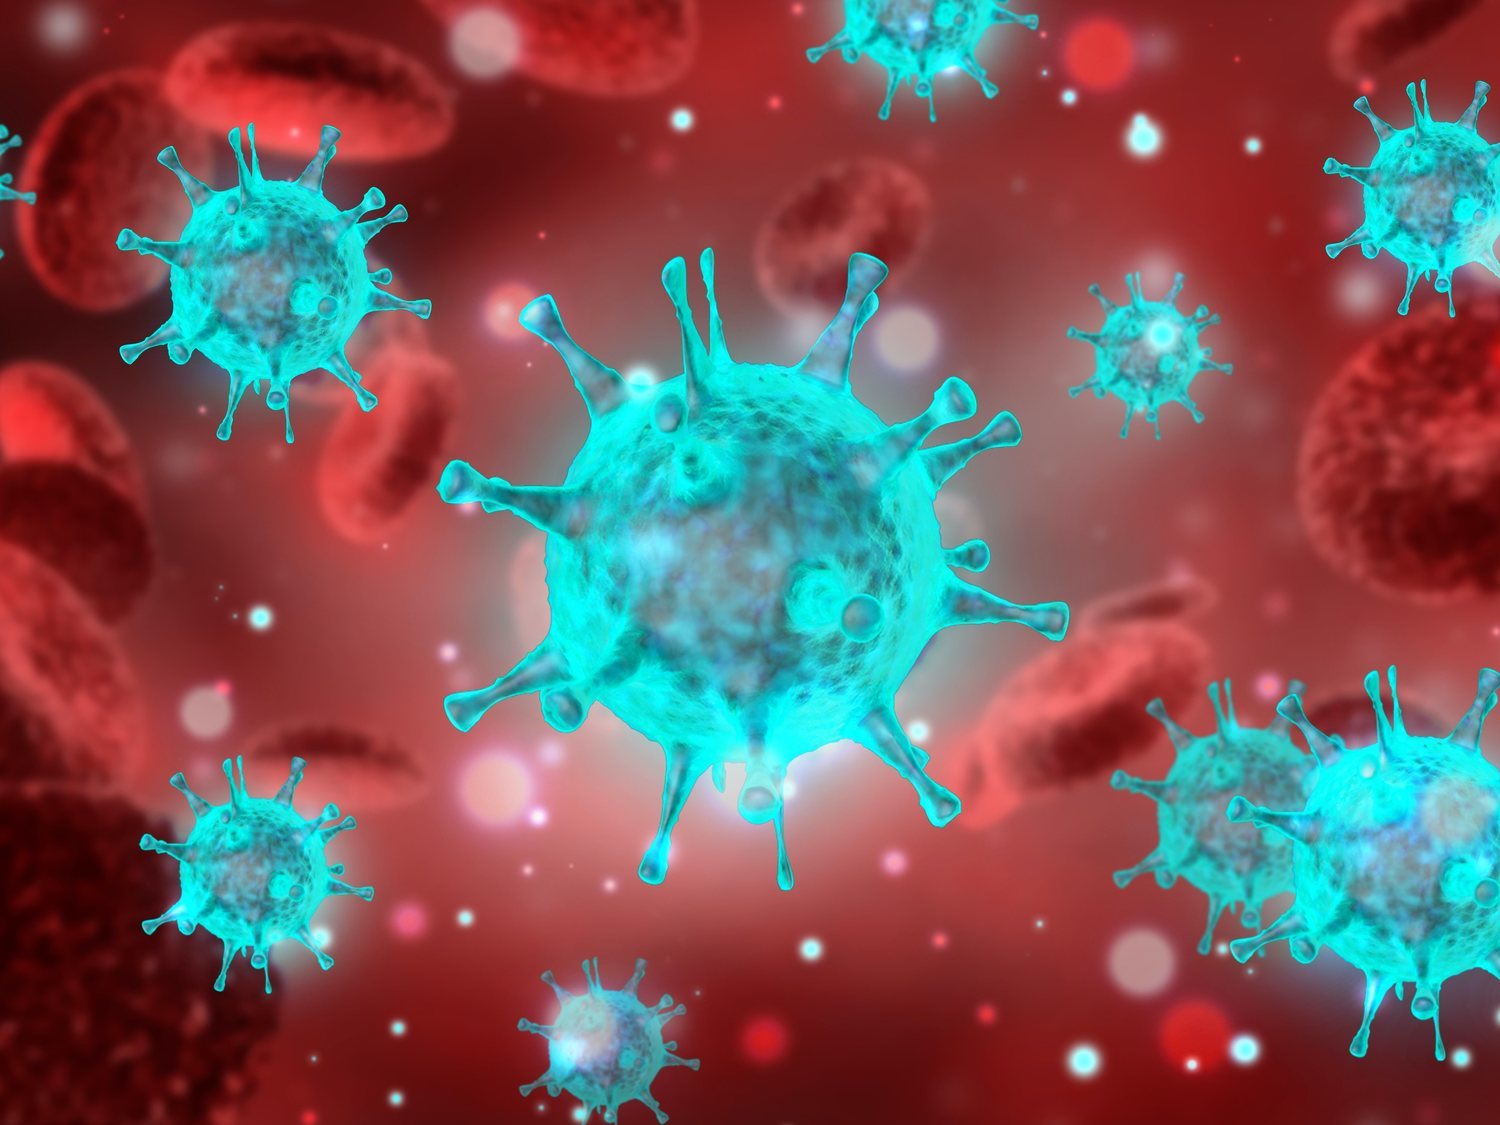 La OMS cree que el coronavirus surgió antes de diciembre: ¿Cuándo llegó realmente la pandemia?